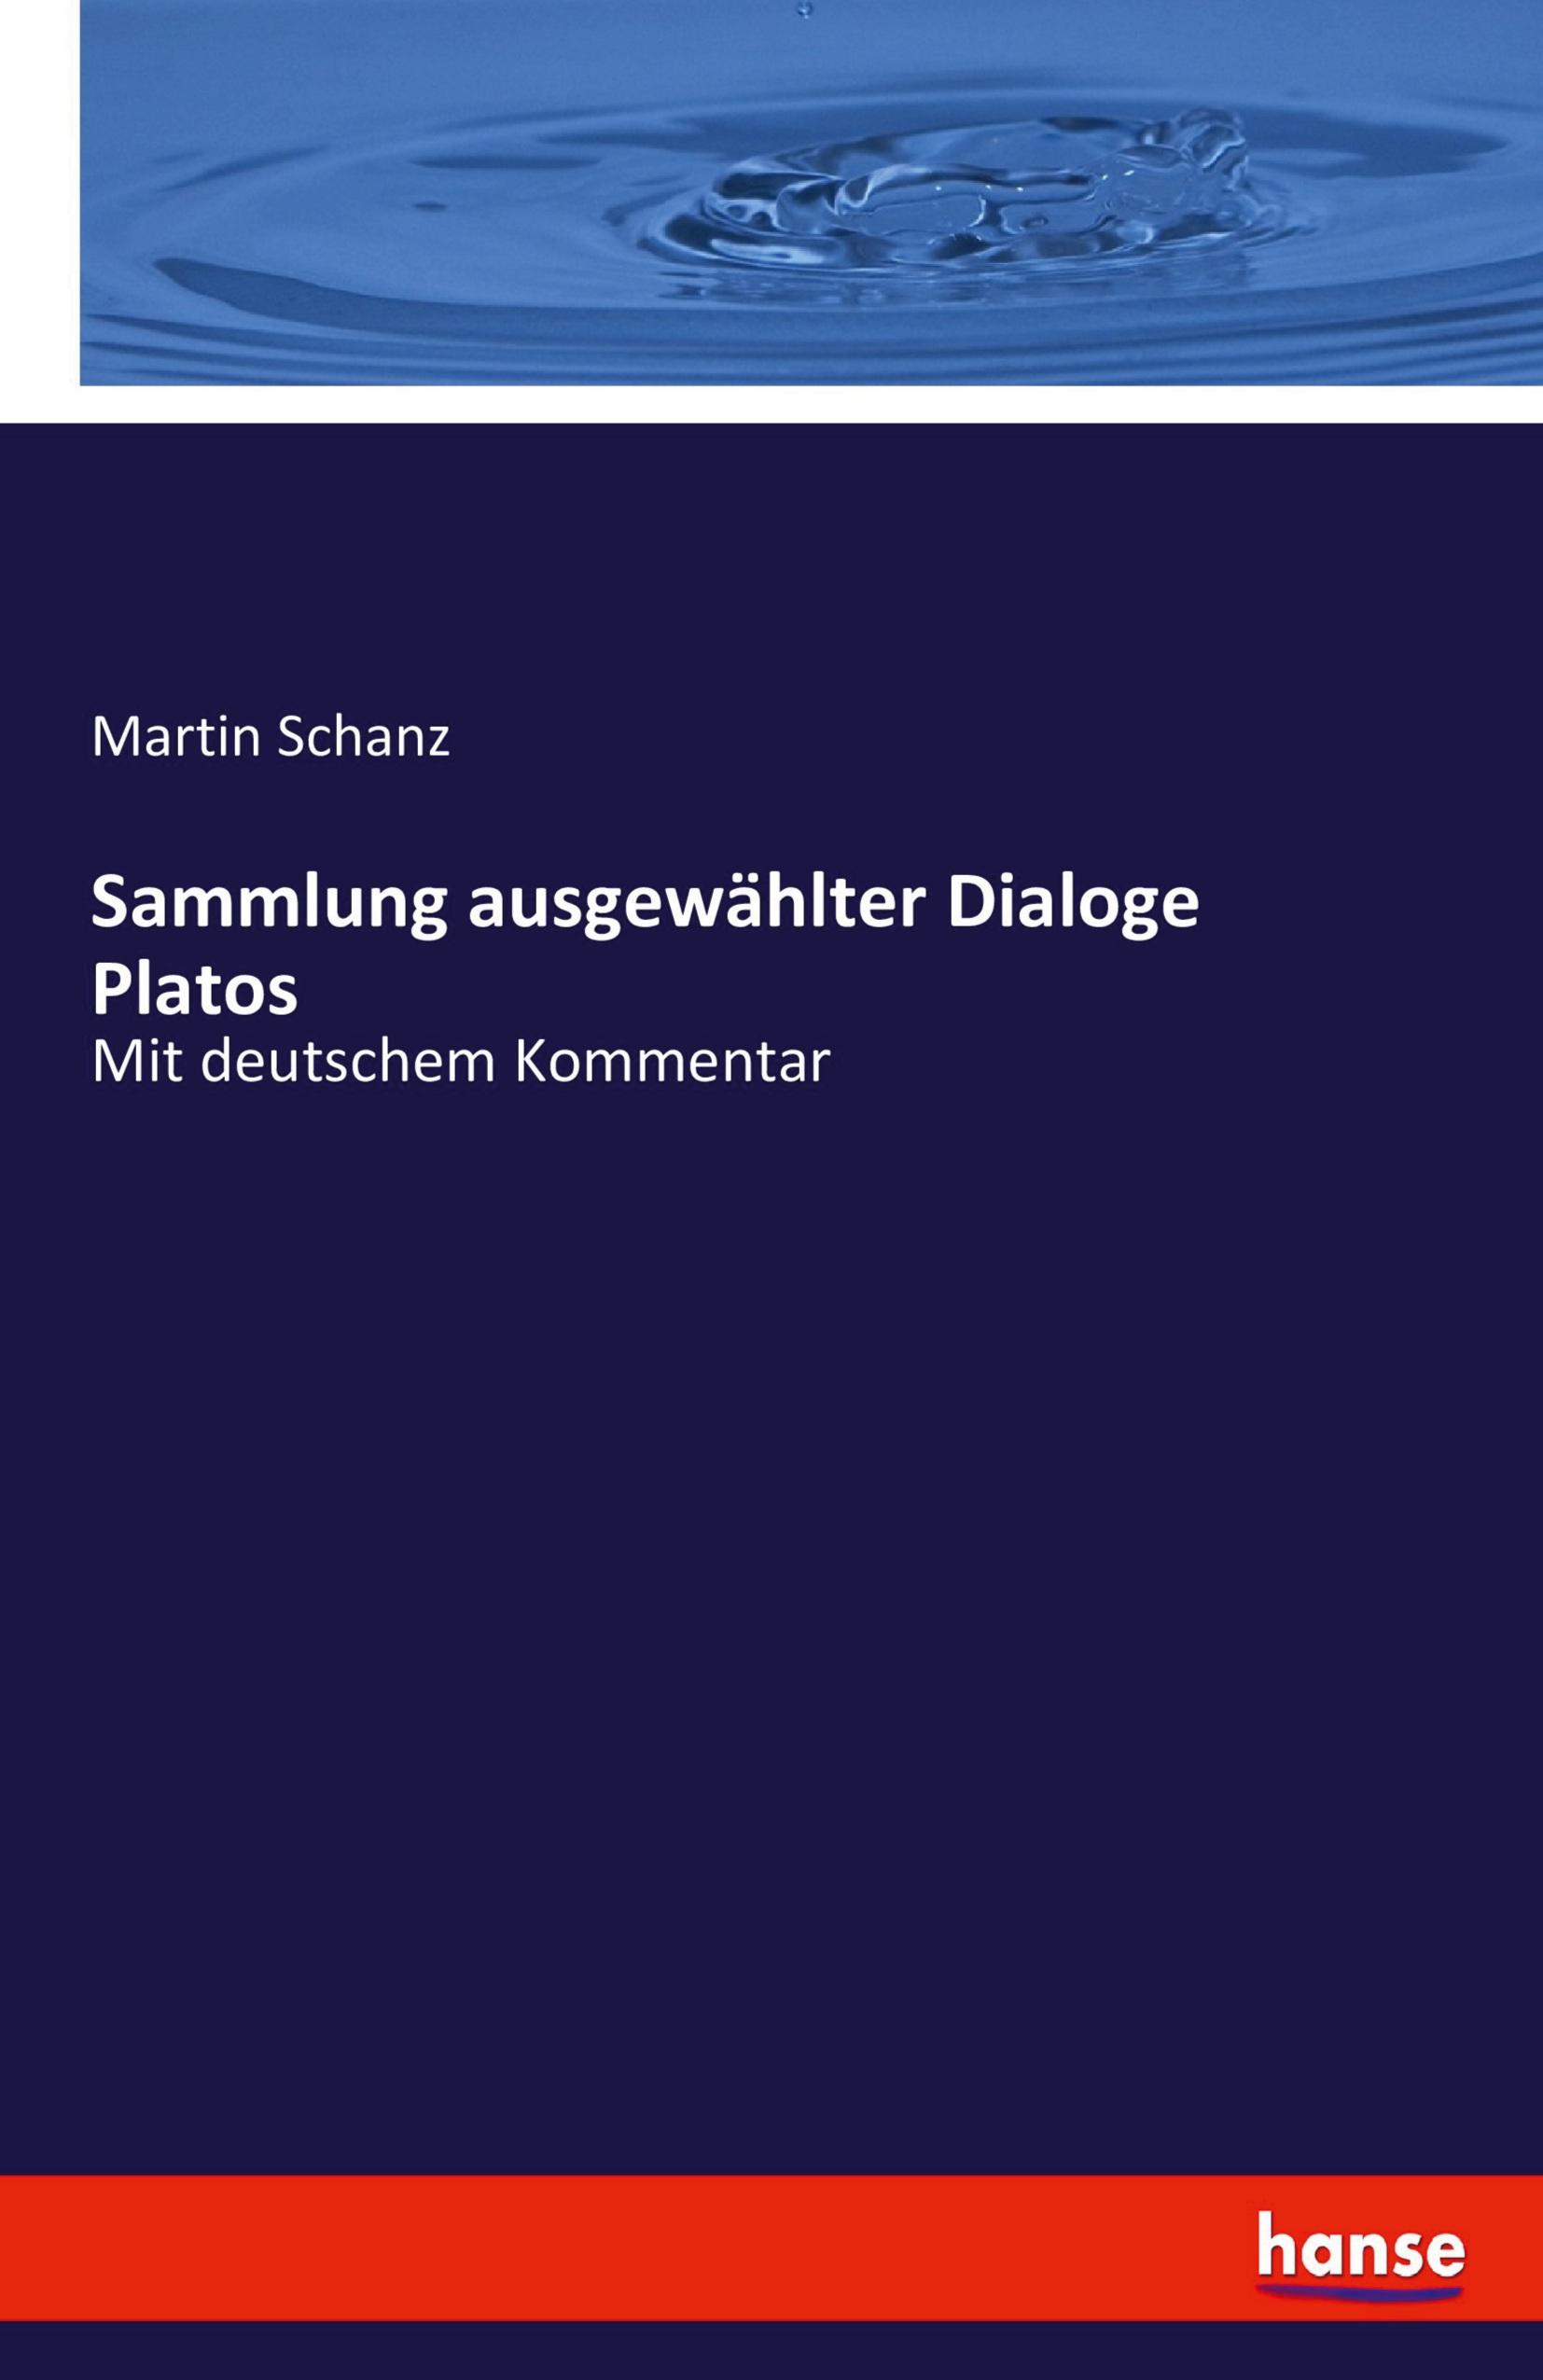 Sammlung ausgewählter Dialoge Platos | Mit deutschem Kommentar | Martin Schanz | Taschenbuch | Paperback | 76 S. | Deutsch | 2020 | hansebooks | EAN 9783744607049 - Schanz, Martin